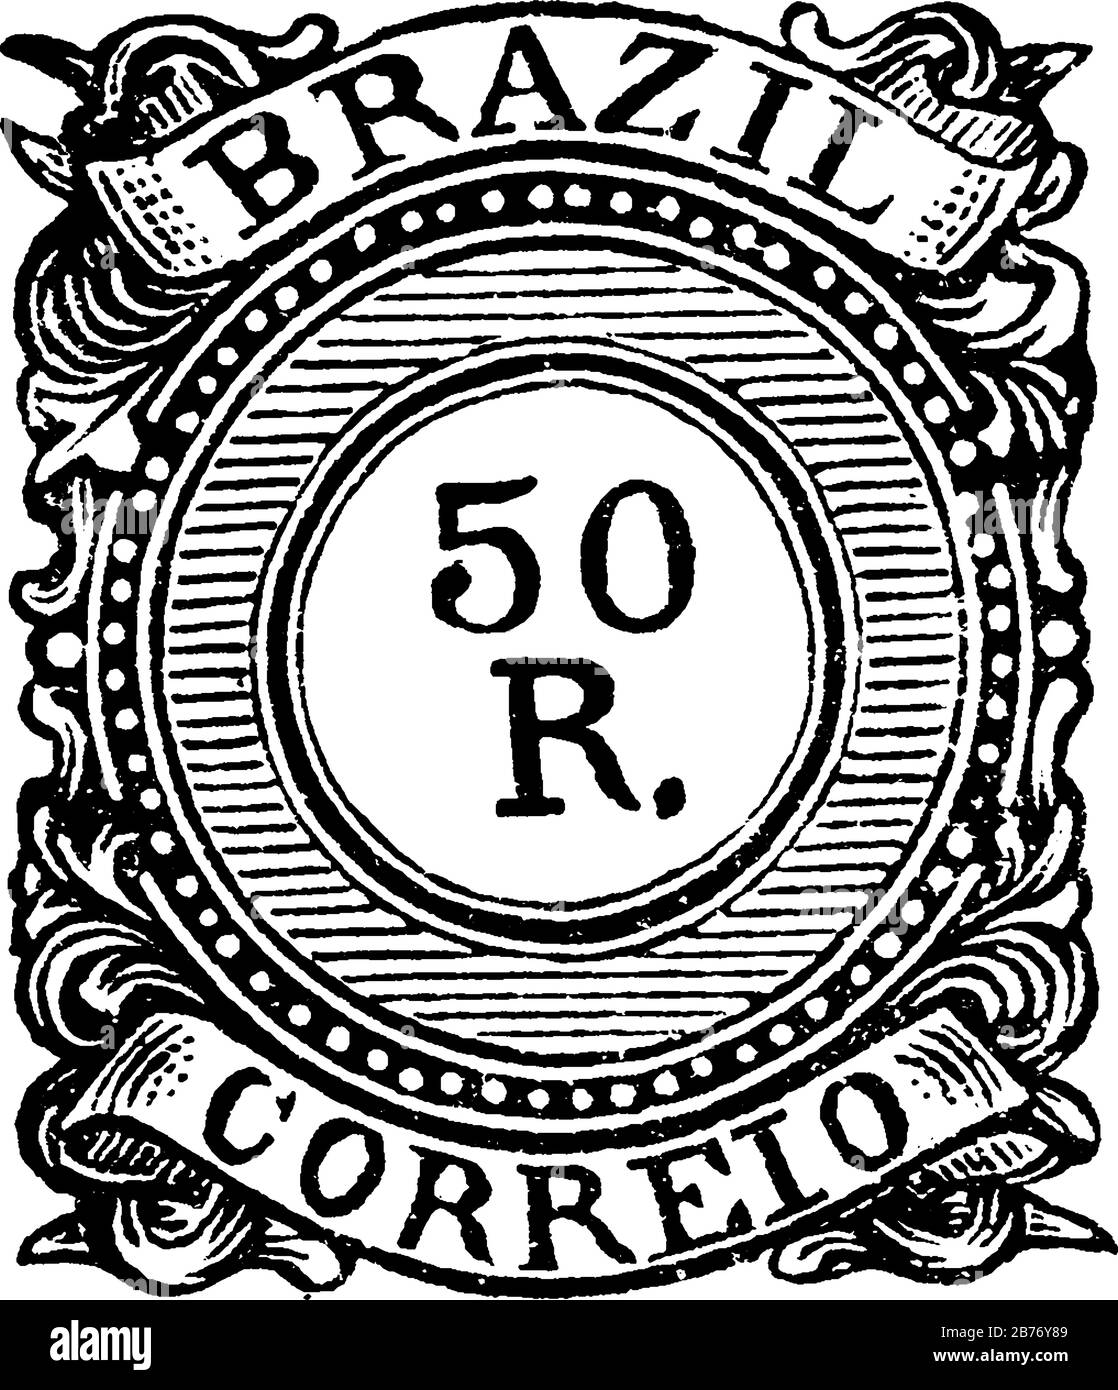 Brasile Stamp (50 R) dal 1887-1888, un piccolo pezzo adesivo di carta è stato attaccato a qualcosa per mostrare una quantità di denaro pagato, principalmente un francobollo, vi Illustrazione Vettoriale